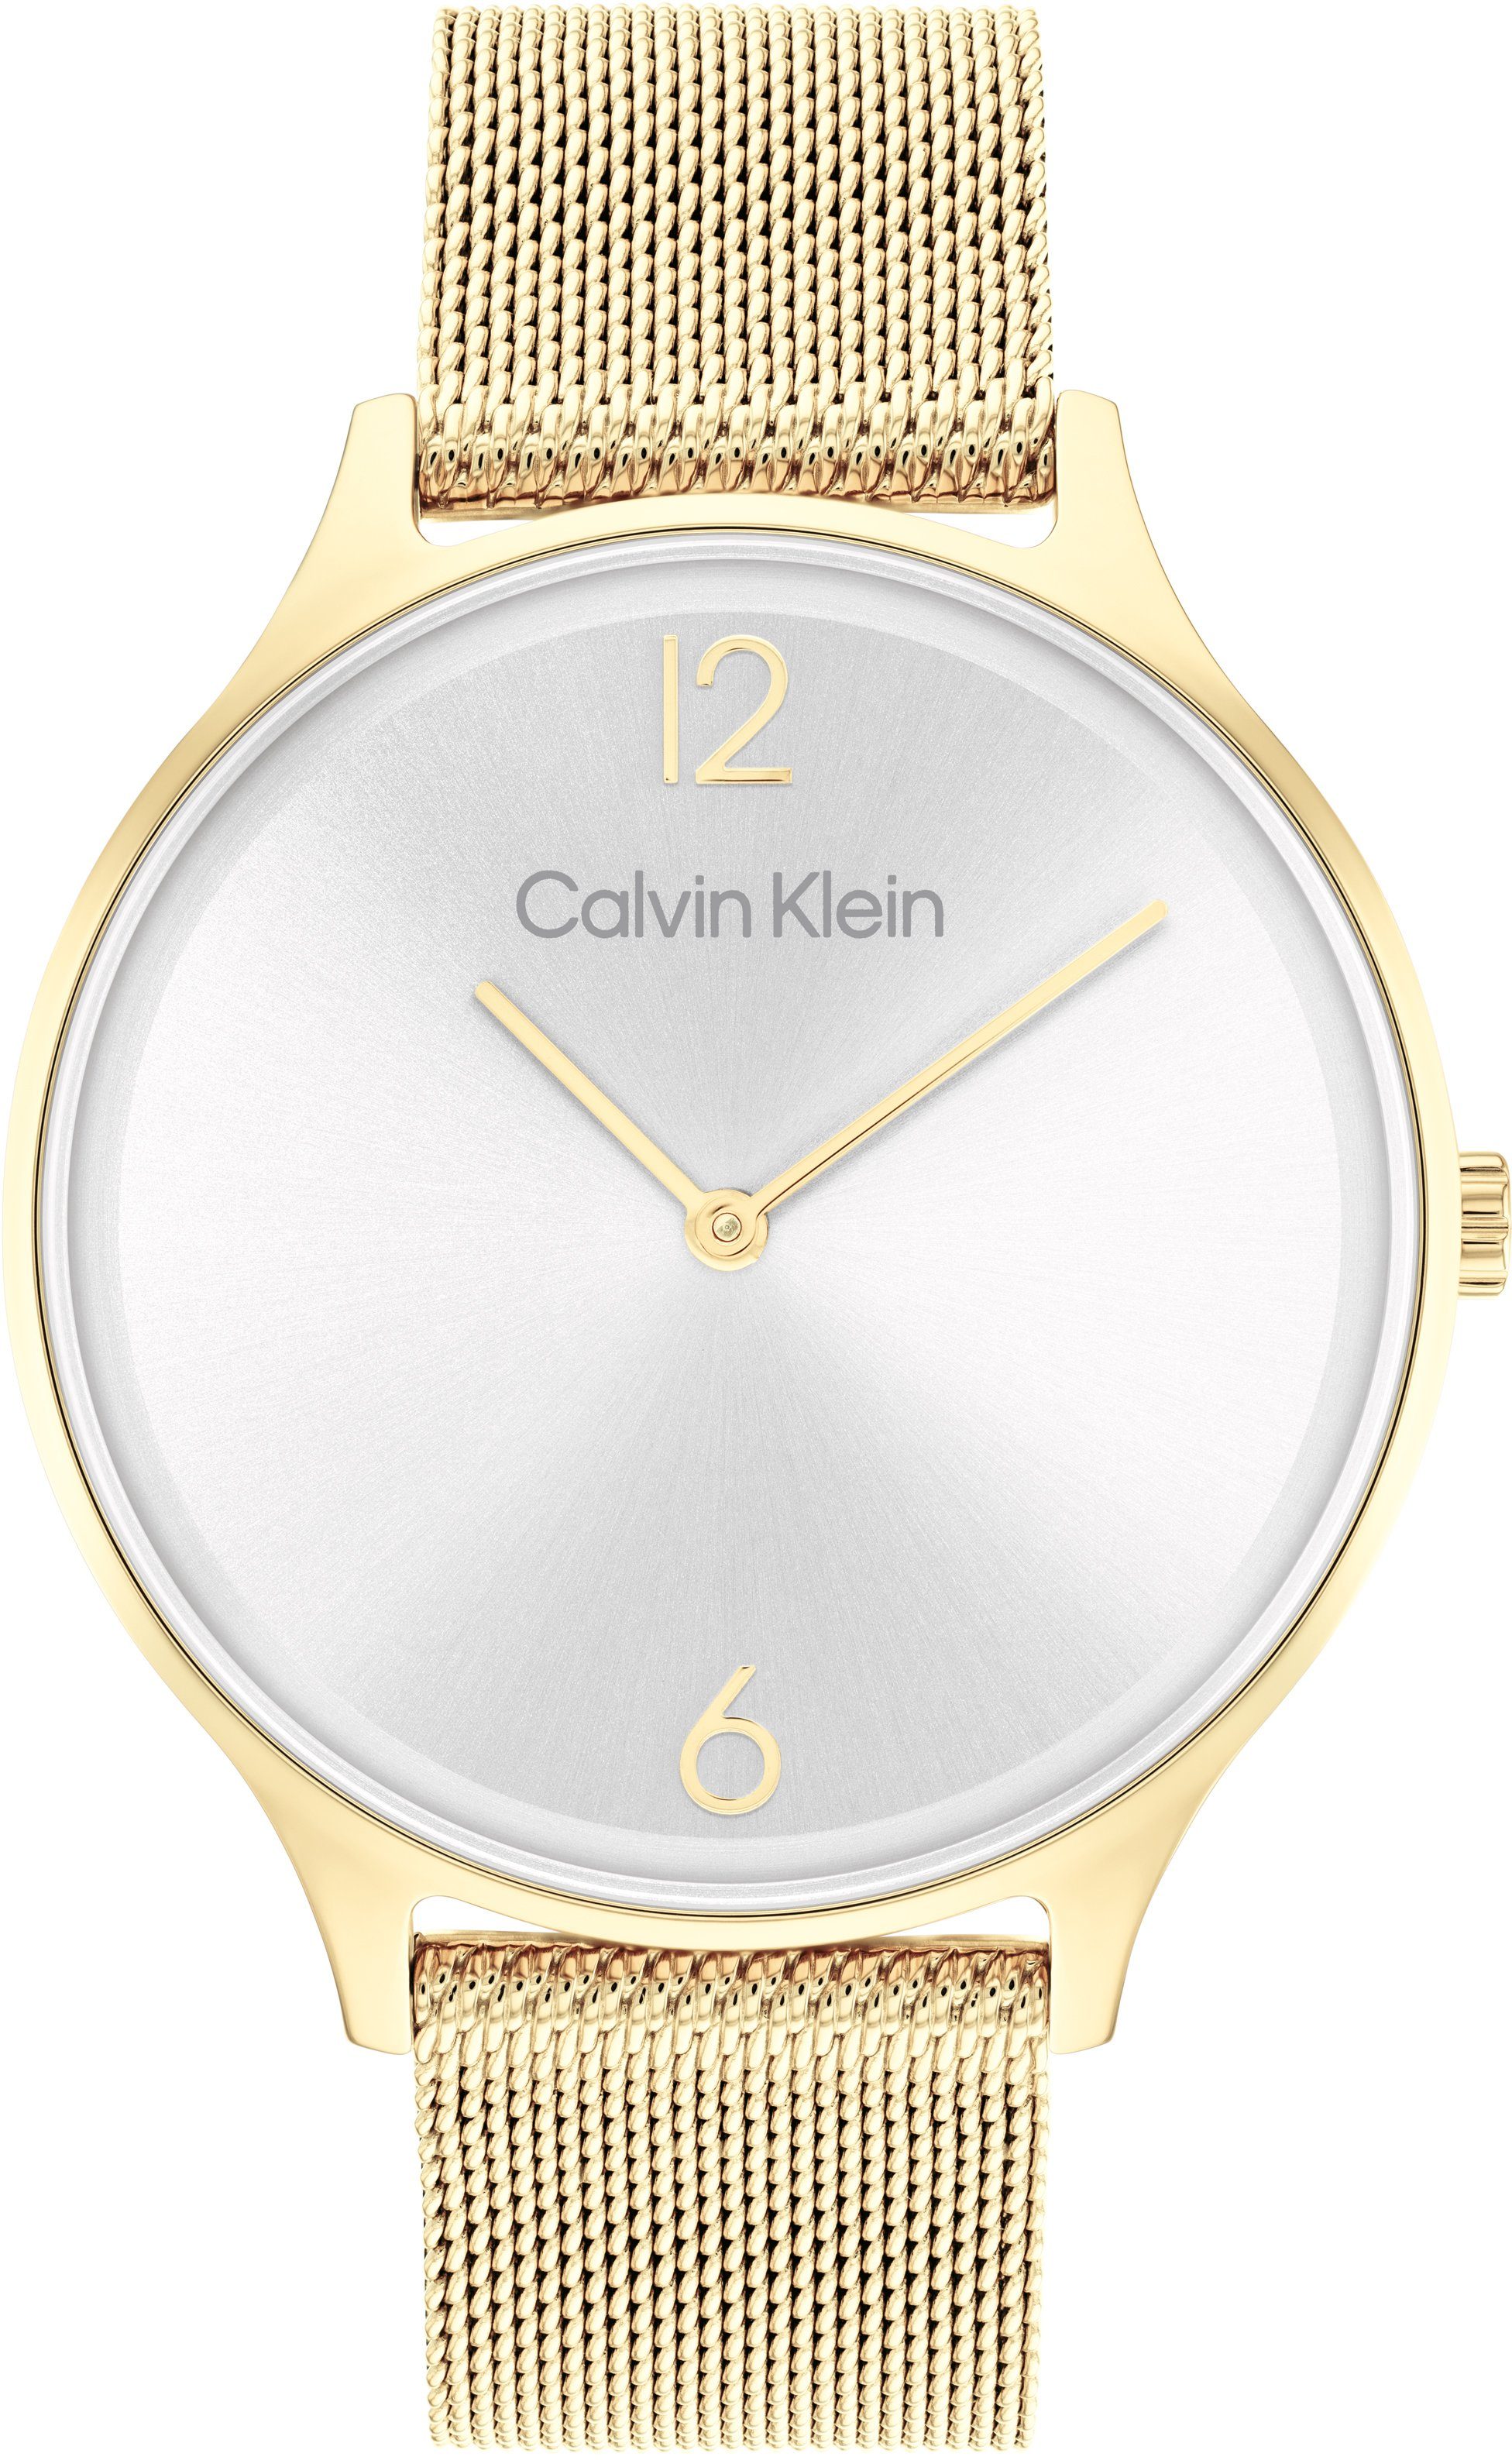 Calvin Klein Quarzuhr Timeless 2H, 25200003, Armbanduhr, Damenuhr, Mineralglas, IP-Beschichtung